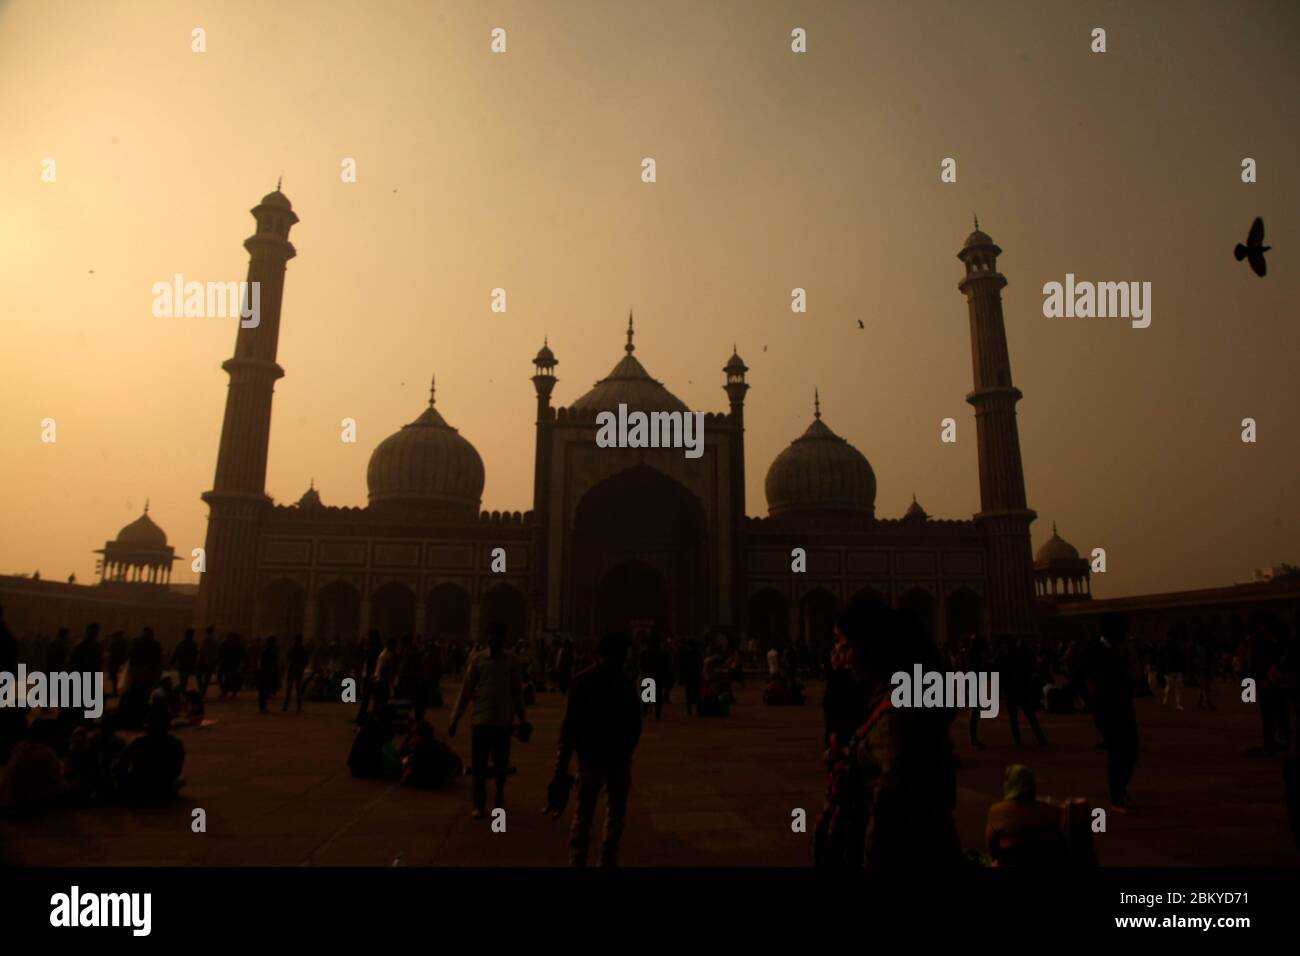 Mosquée islamique de Jama Masjid, Masjid-i Jahan-Numa, Old Delhi, avec dômes et minarets, plus grande mosquée en Inde, New Delhi, Inde (Phto © Saji Maramon) Banque D'Images